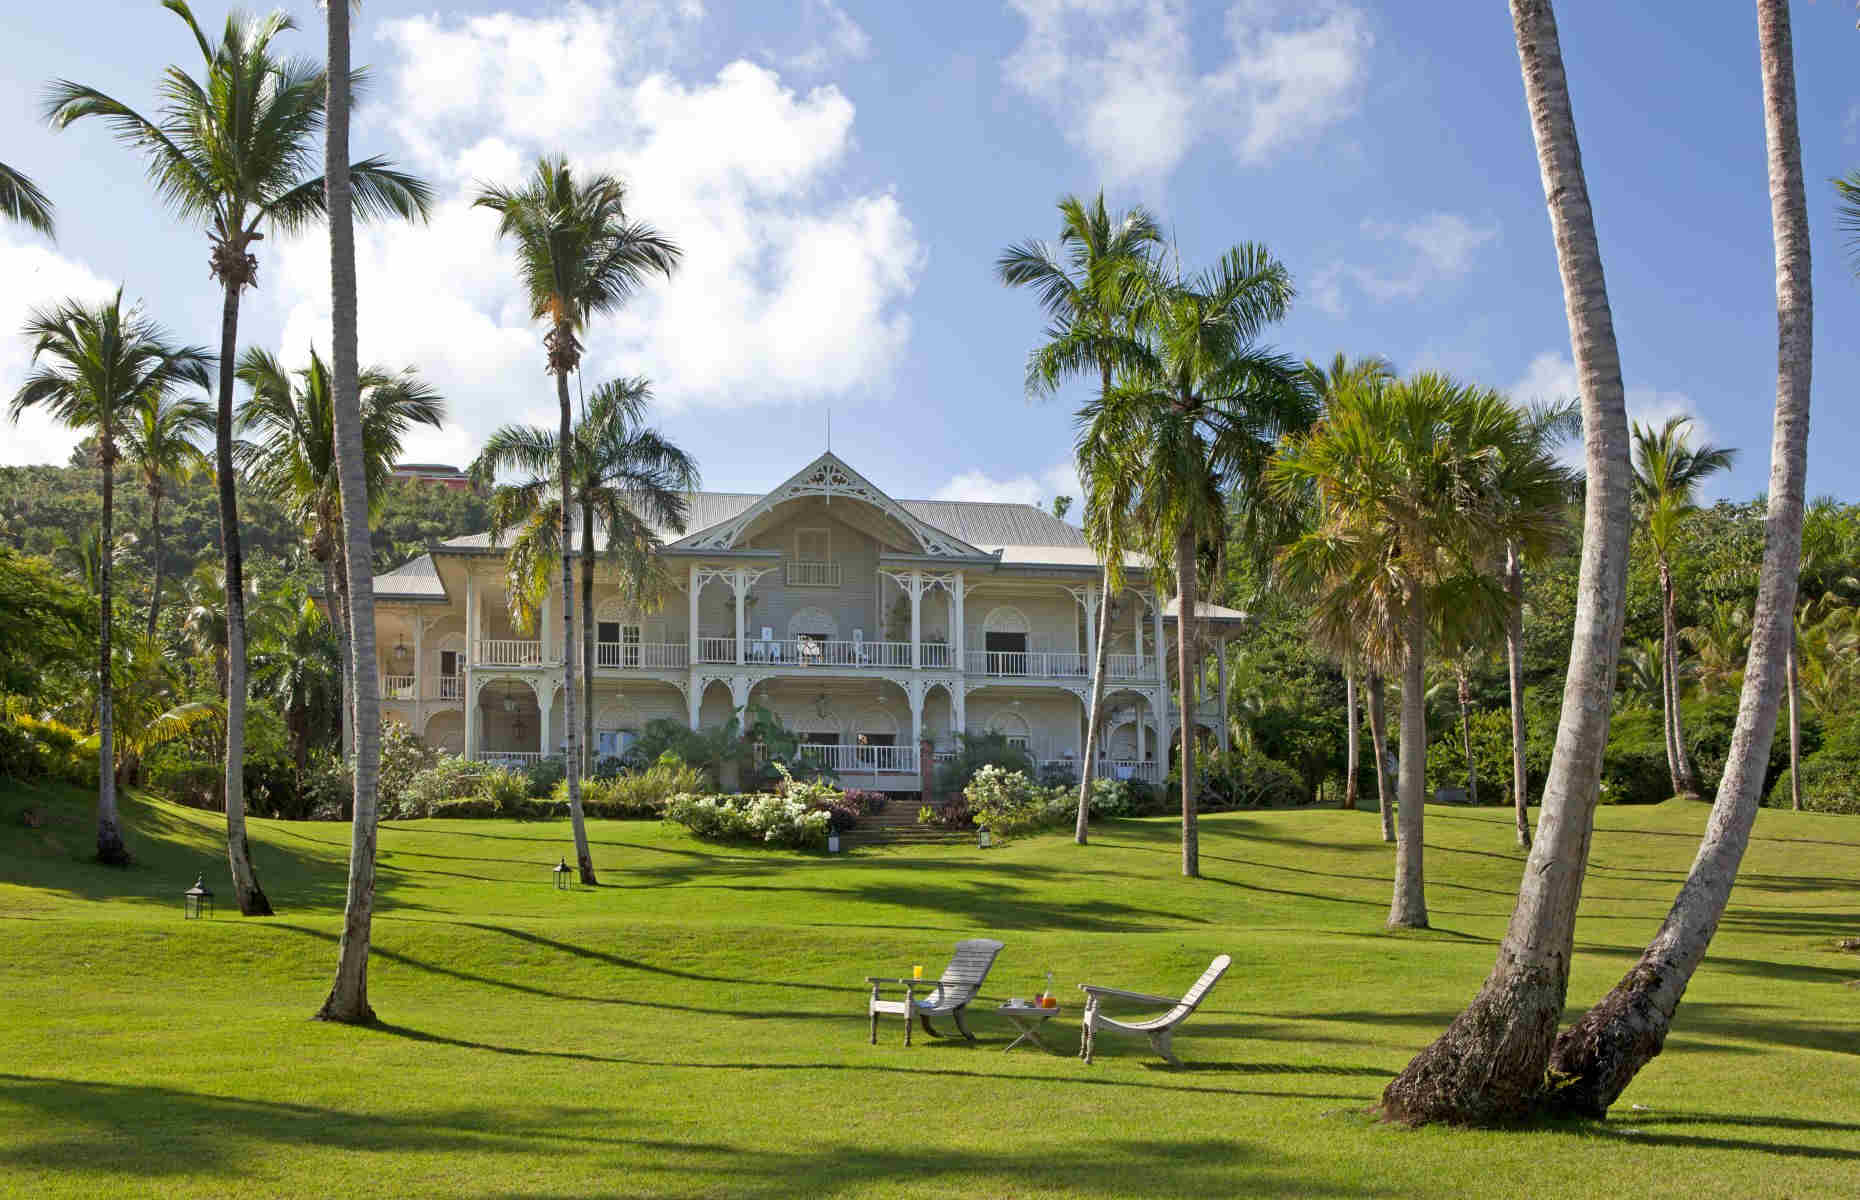 The Peninsula House - Hôtel luxe Samana, République Dominicaine